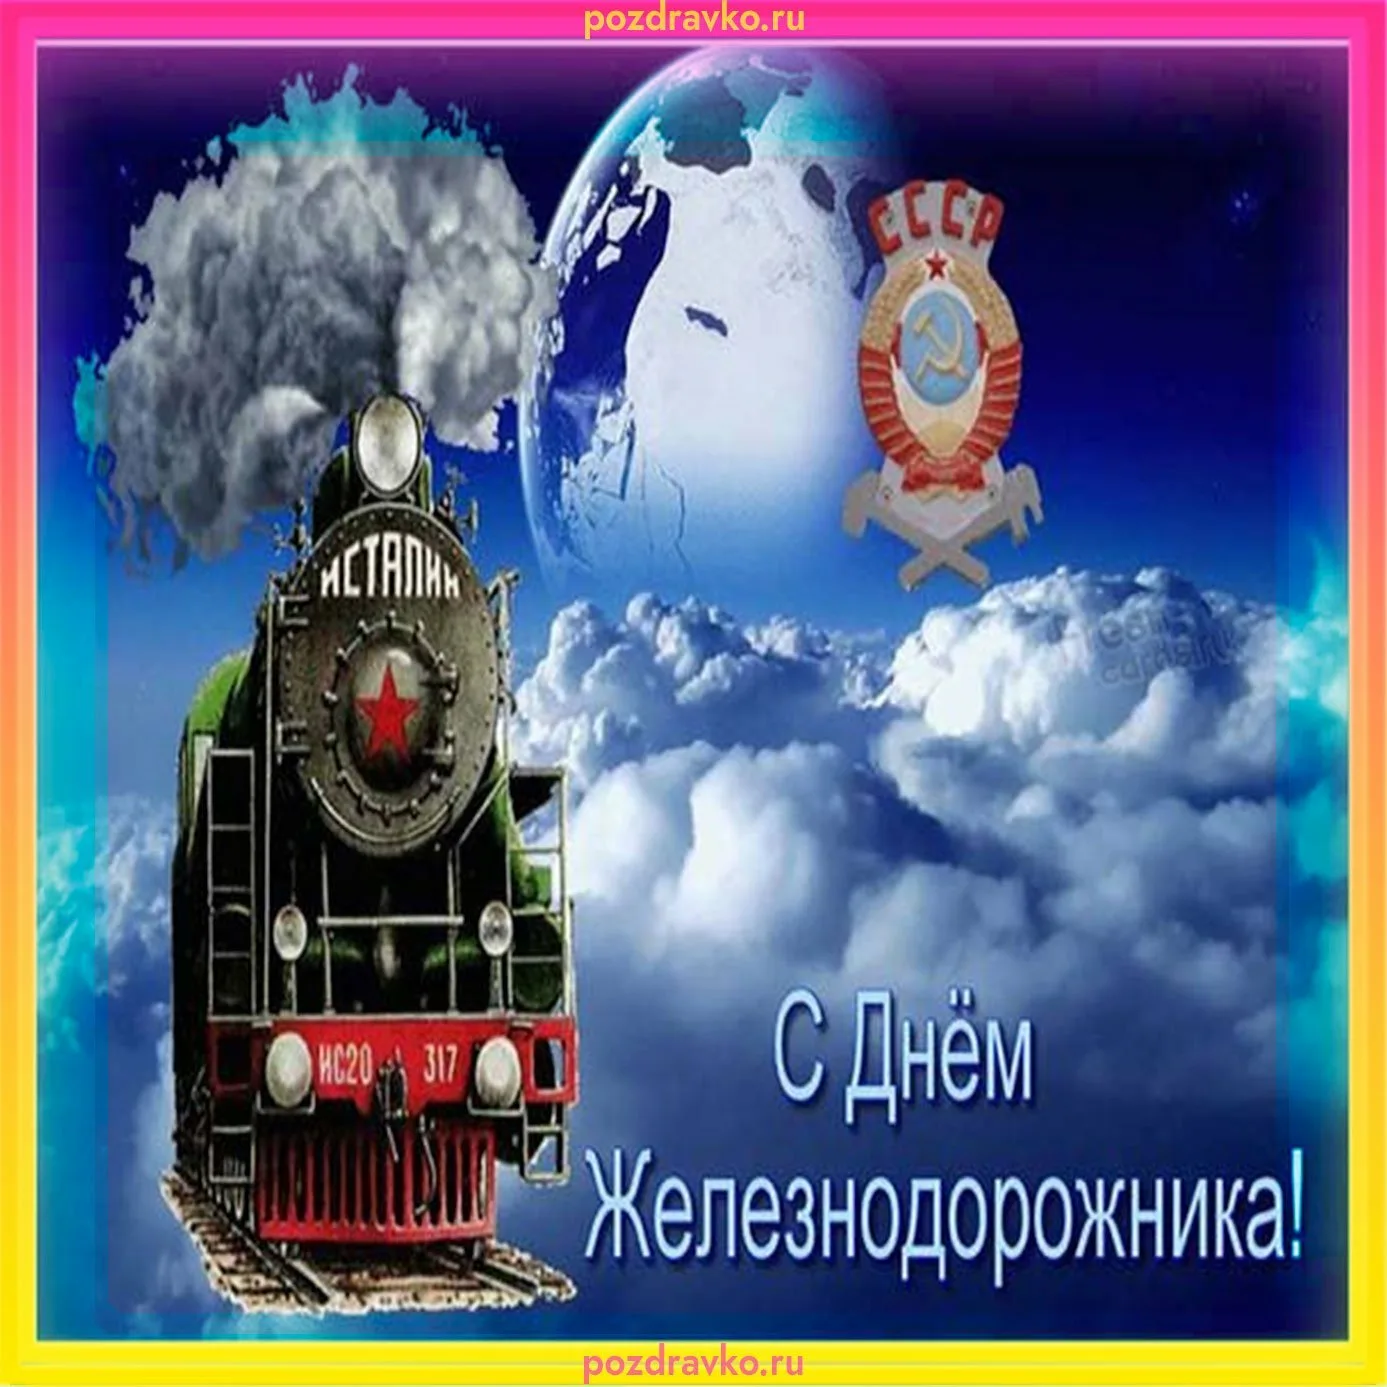 Фото Поздравление с днем железнодорожника Украины #76